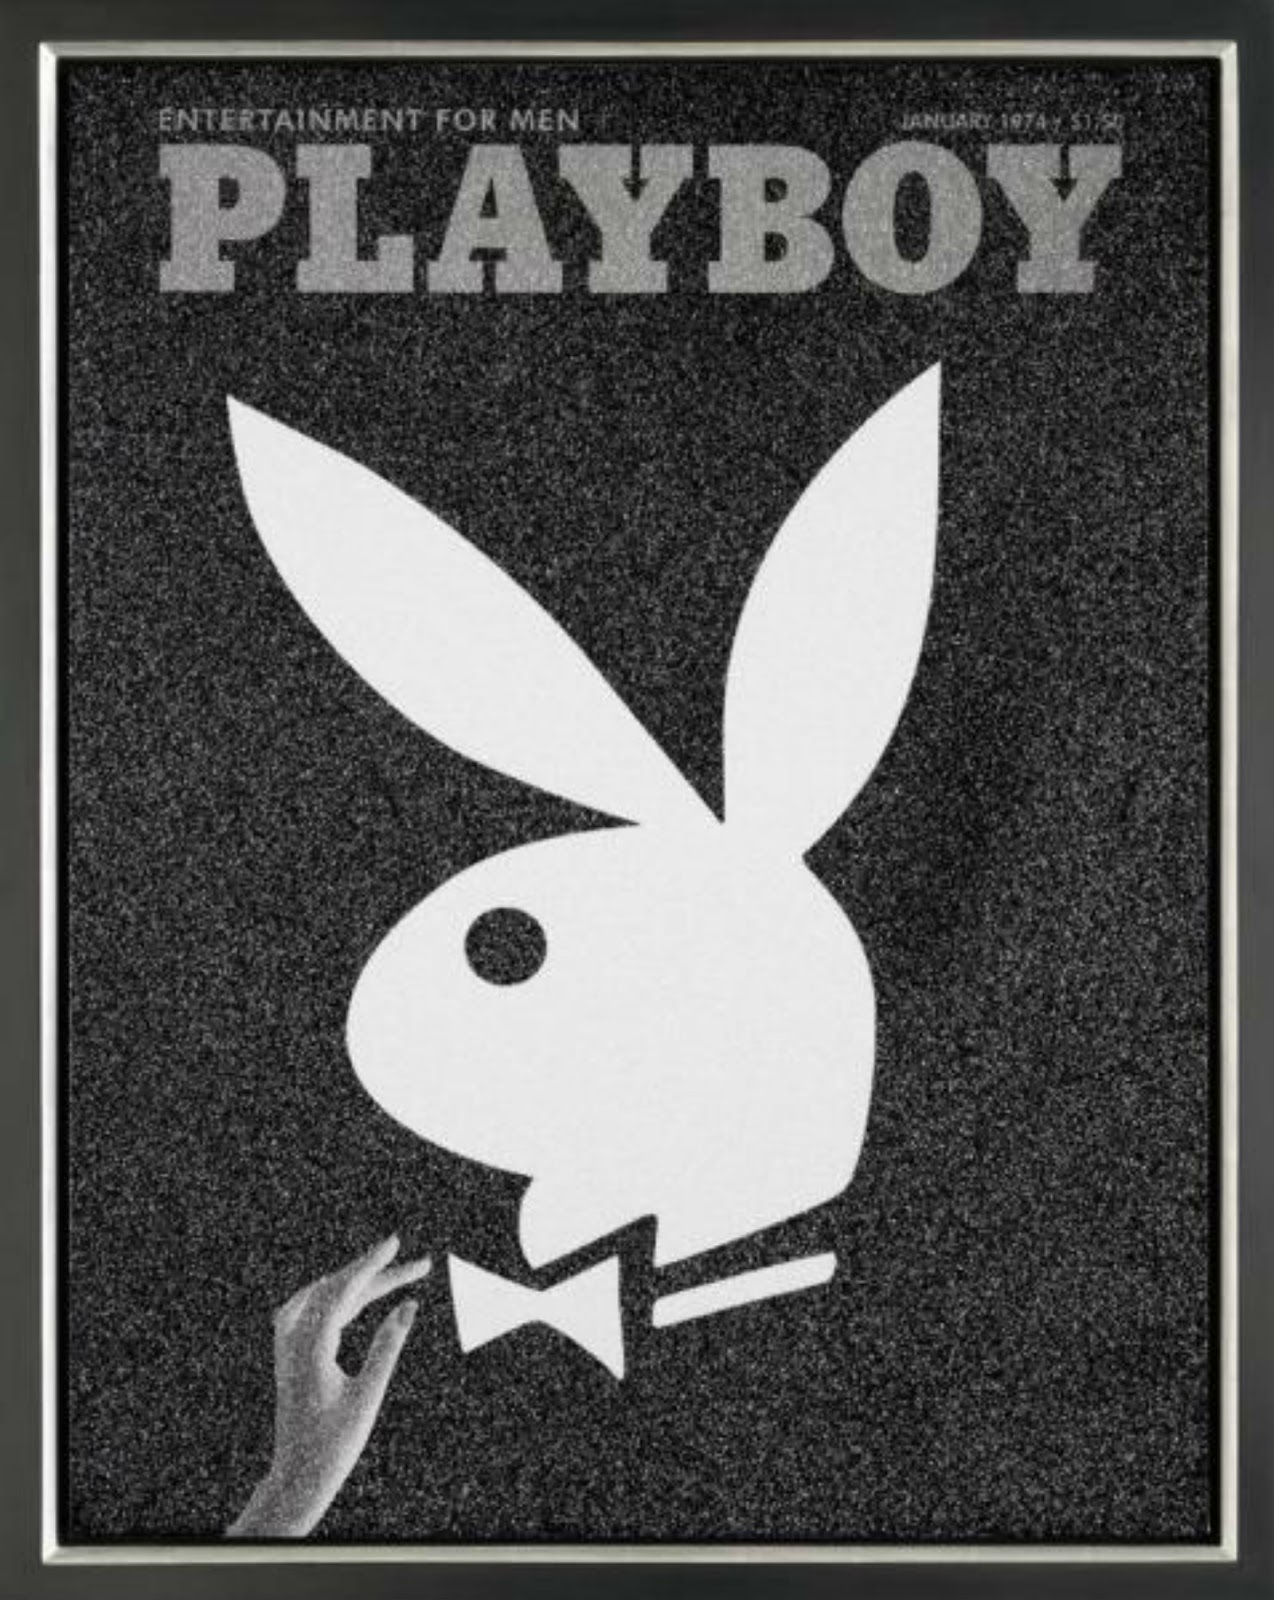 De otros mundos: Playboy. 